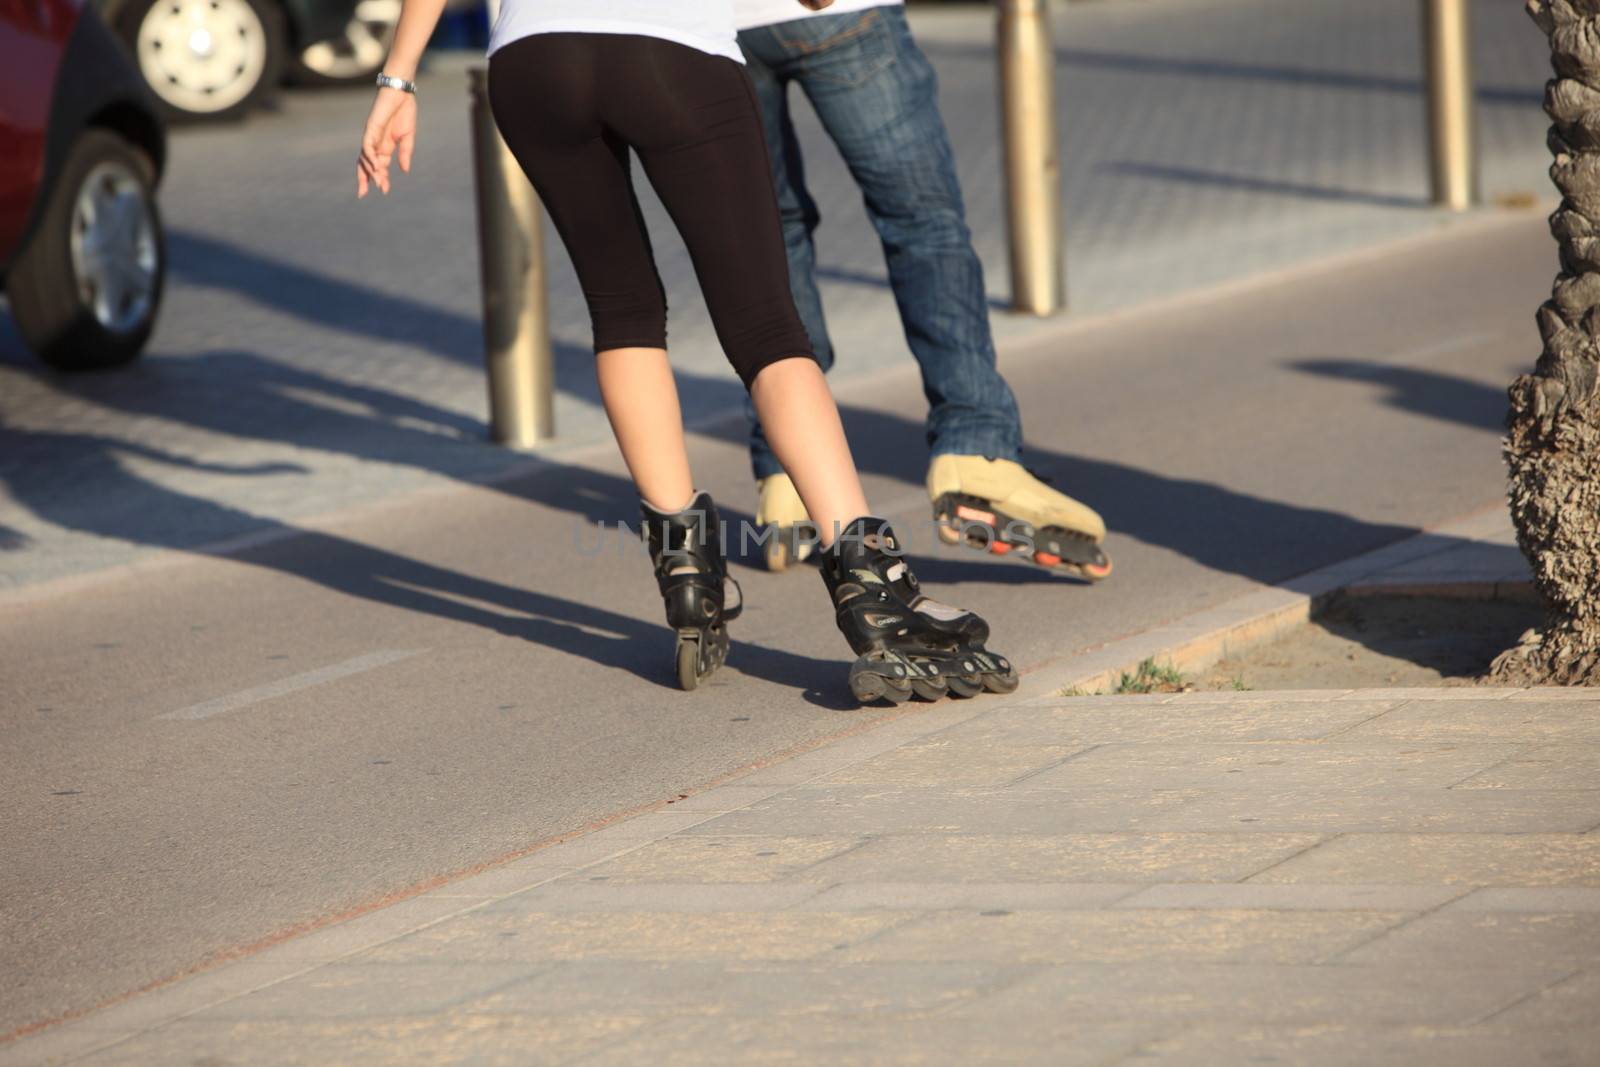 People rollerblading down a sidewalk by Farina6000